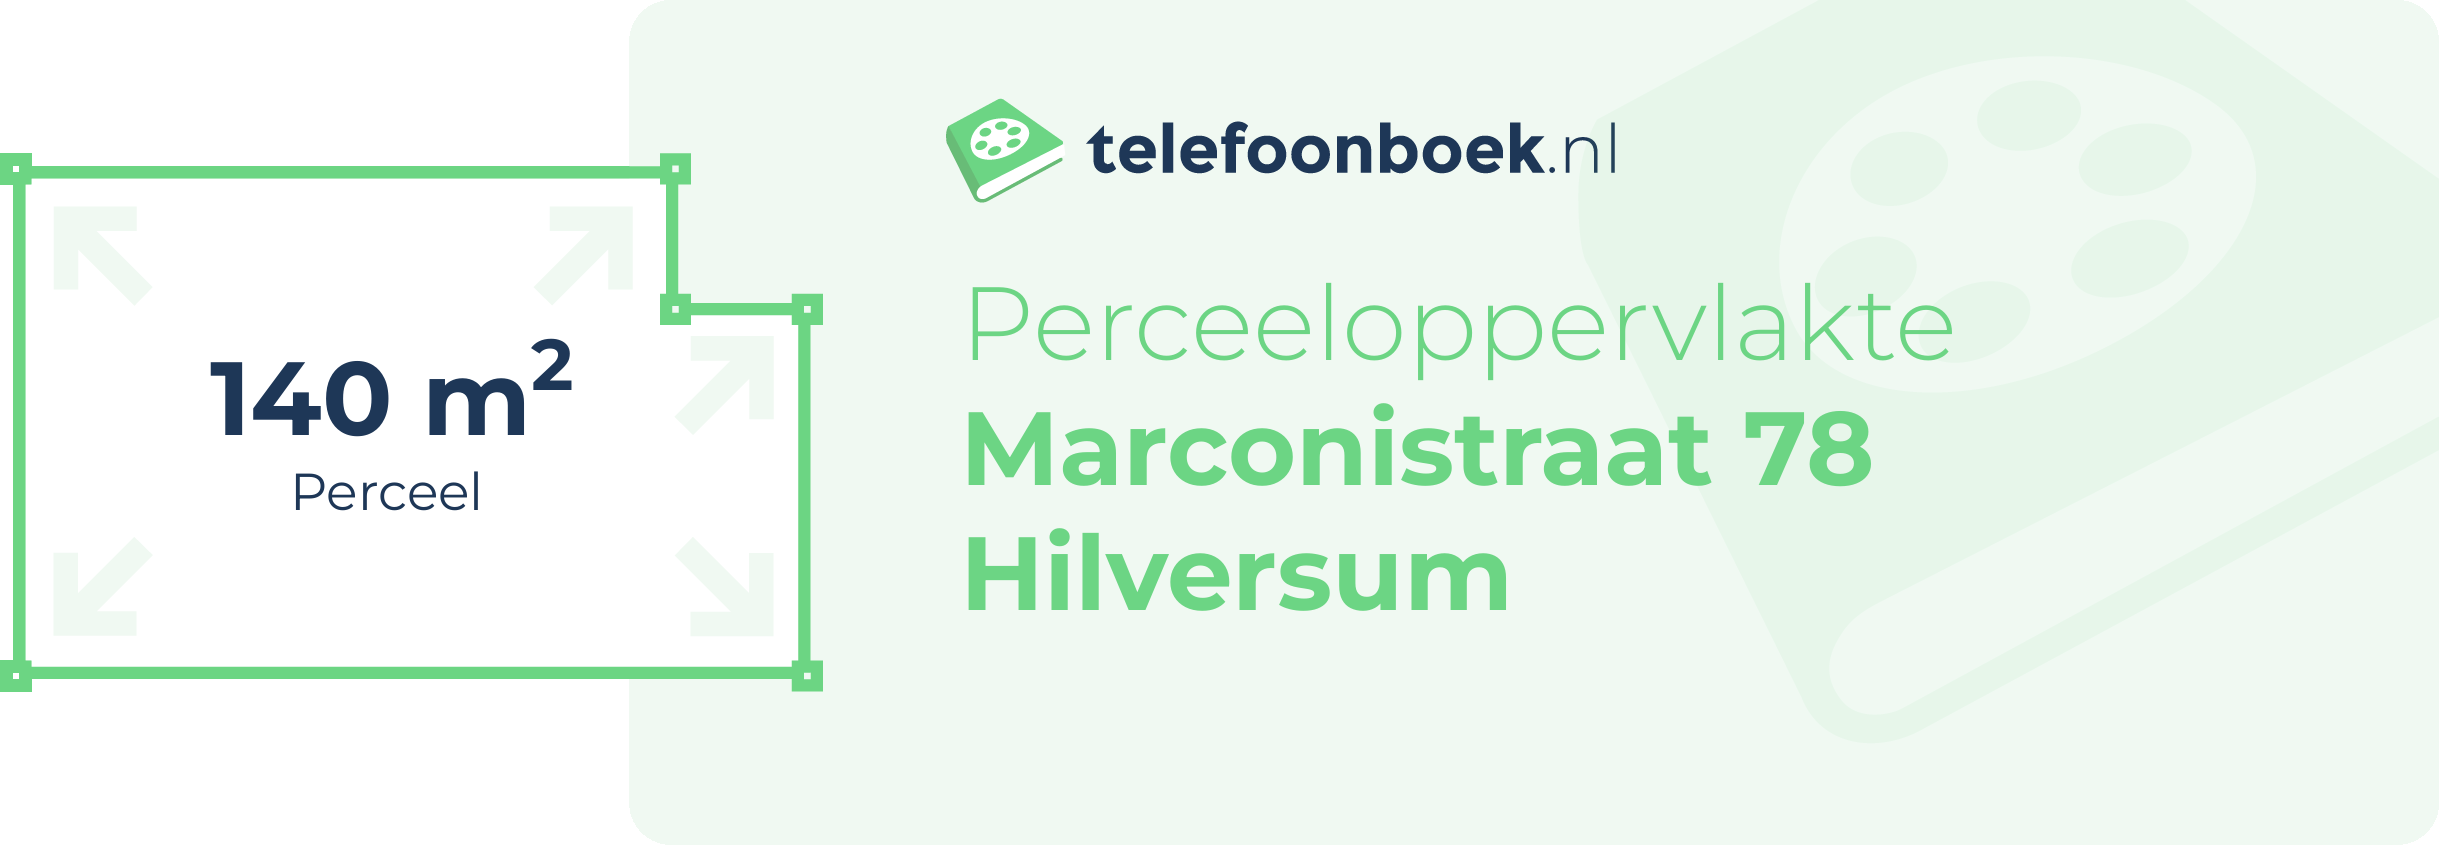 Perceeloppervlakte Marconistraat 78 Hilversum